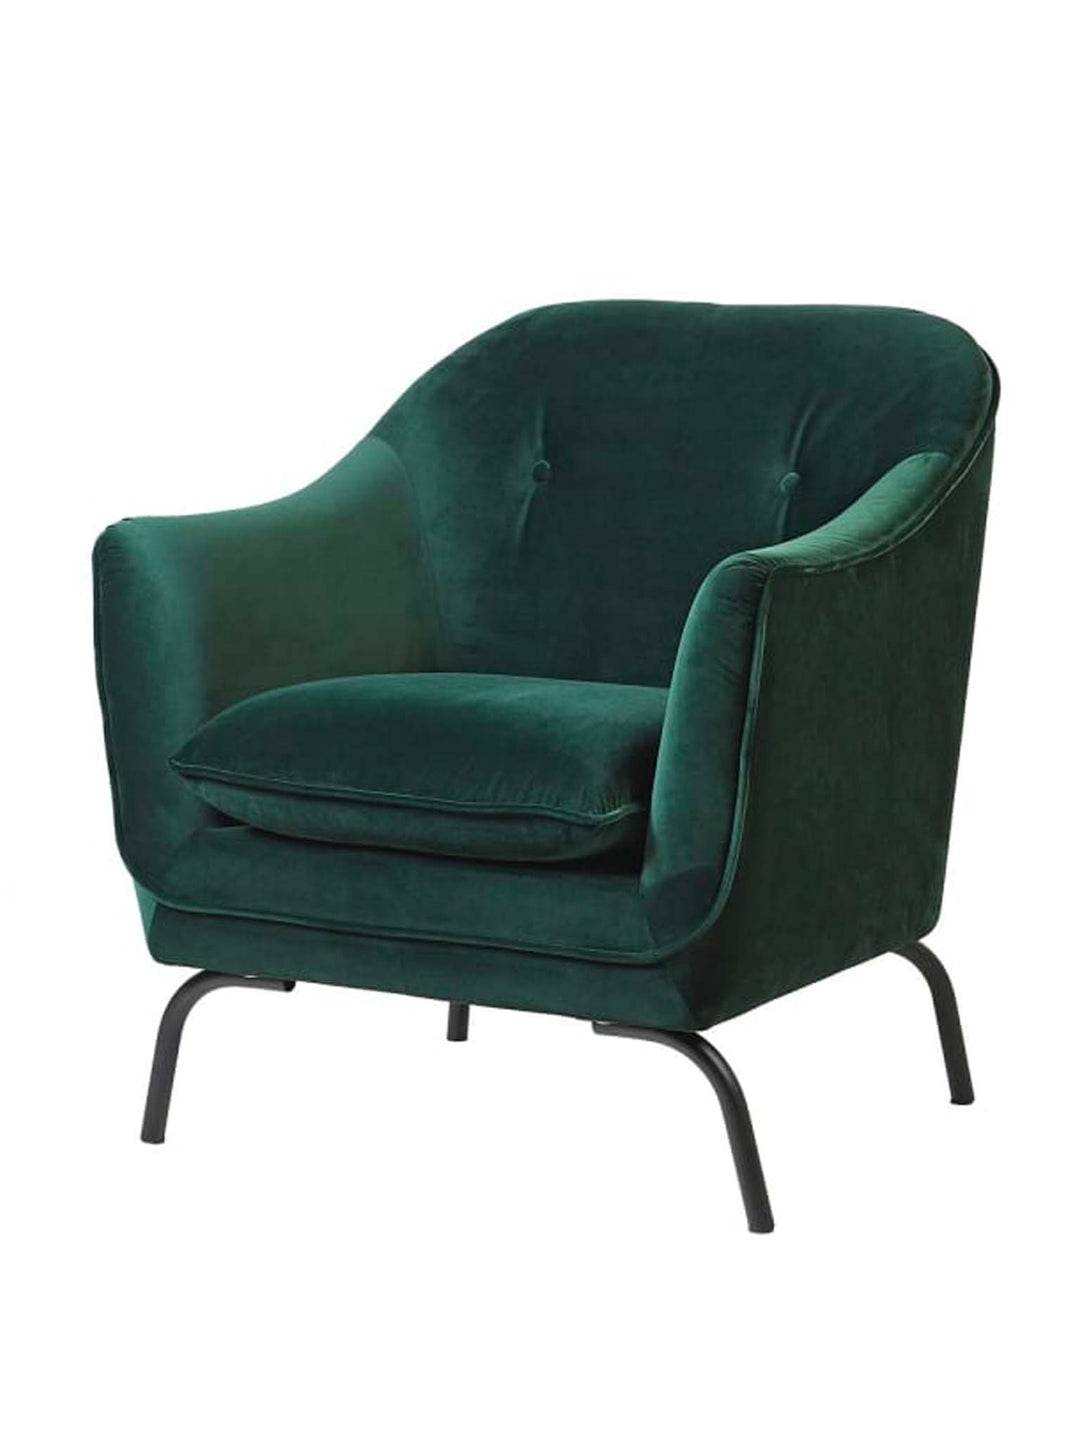 Emerald Green Armchair